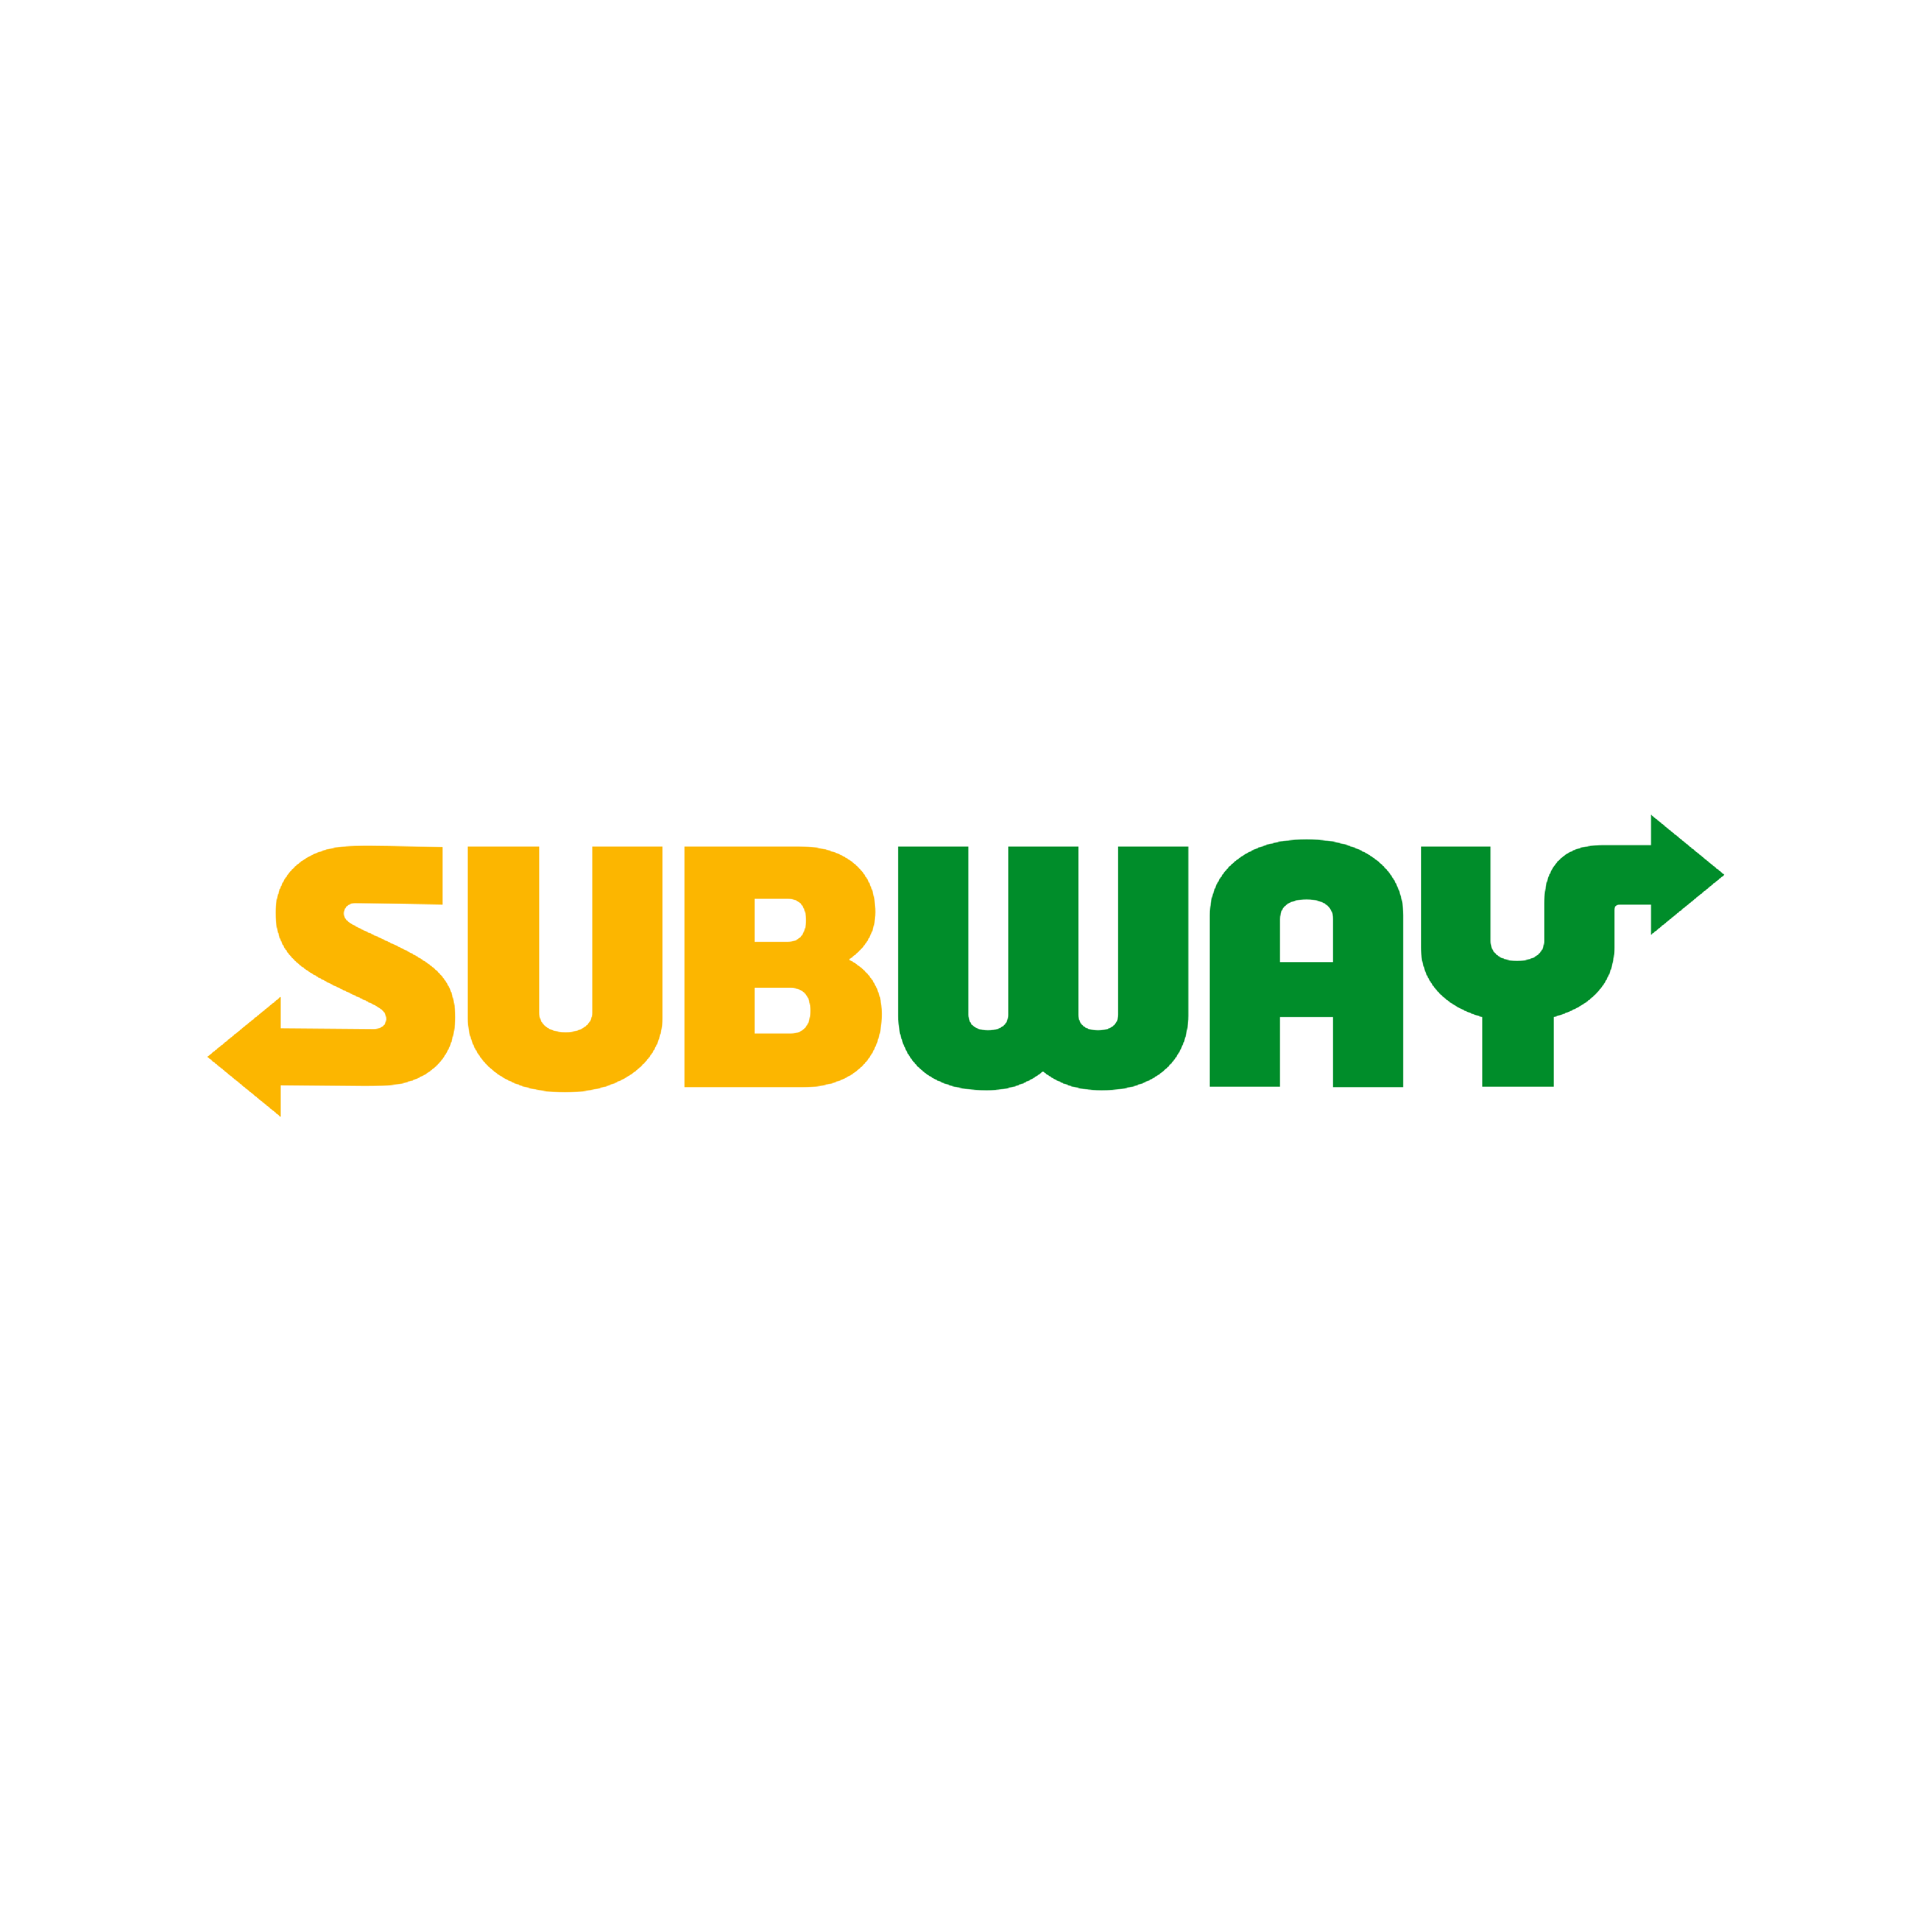 subway (square)